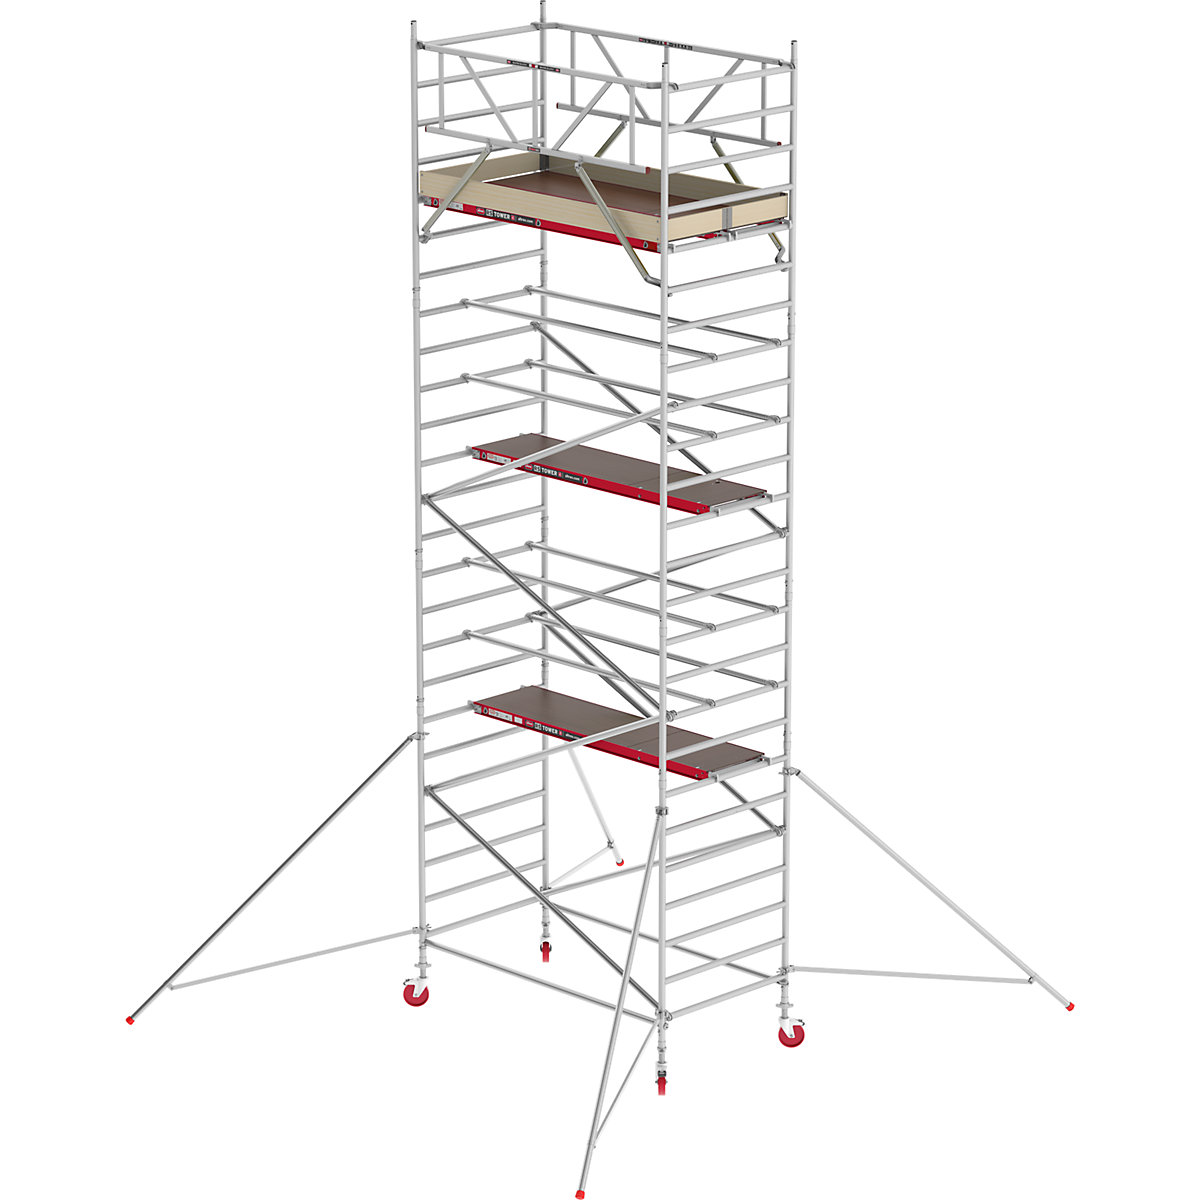 Trabattello mobile RS TOWER 42 largo – Altrex, piattaforma in legno, lunghezza 2,45 m, altezza di lavoro 8,20 m-5